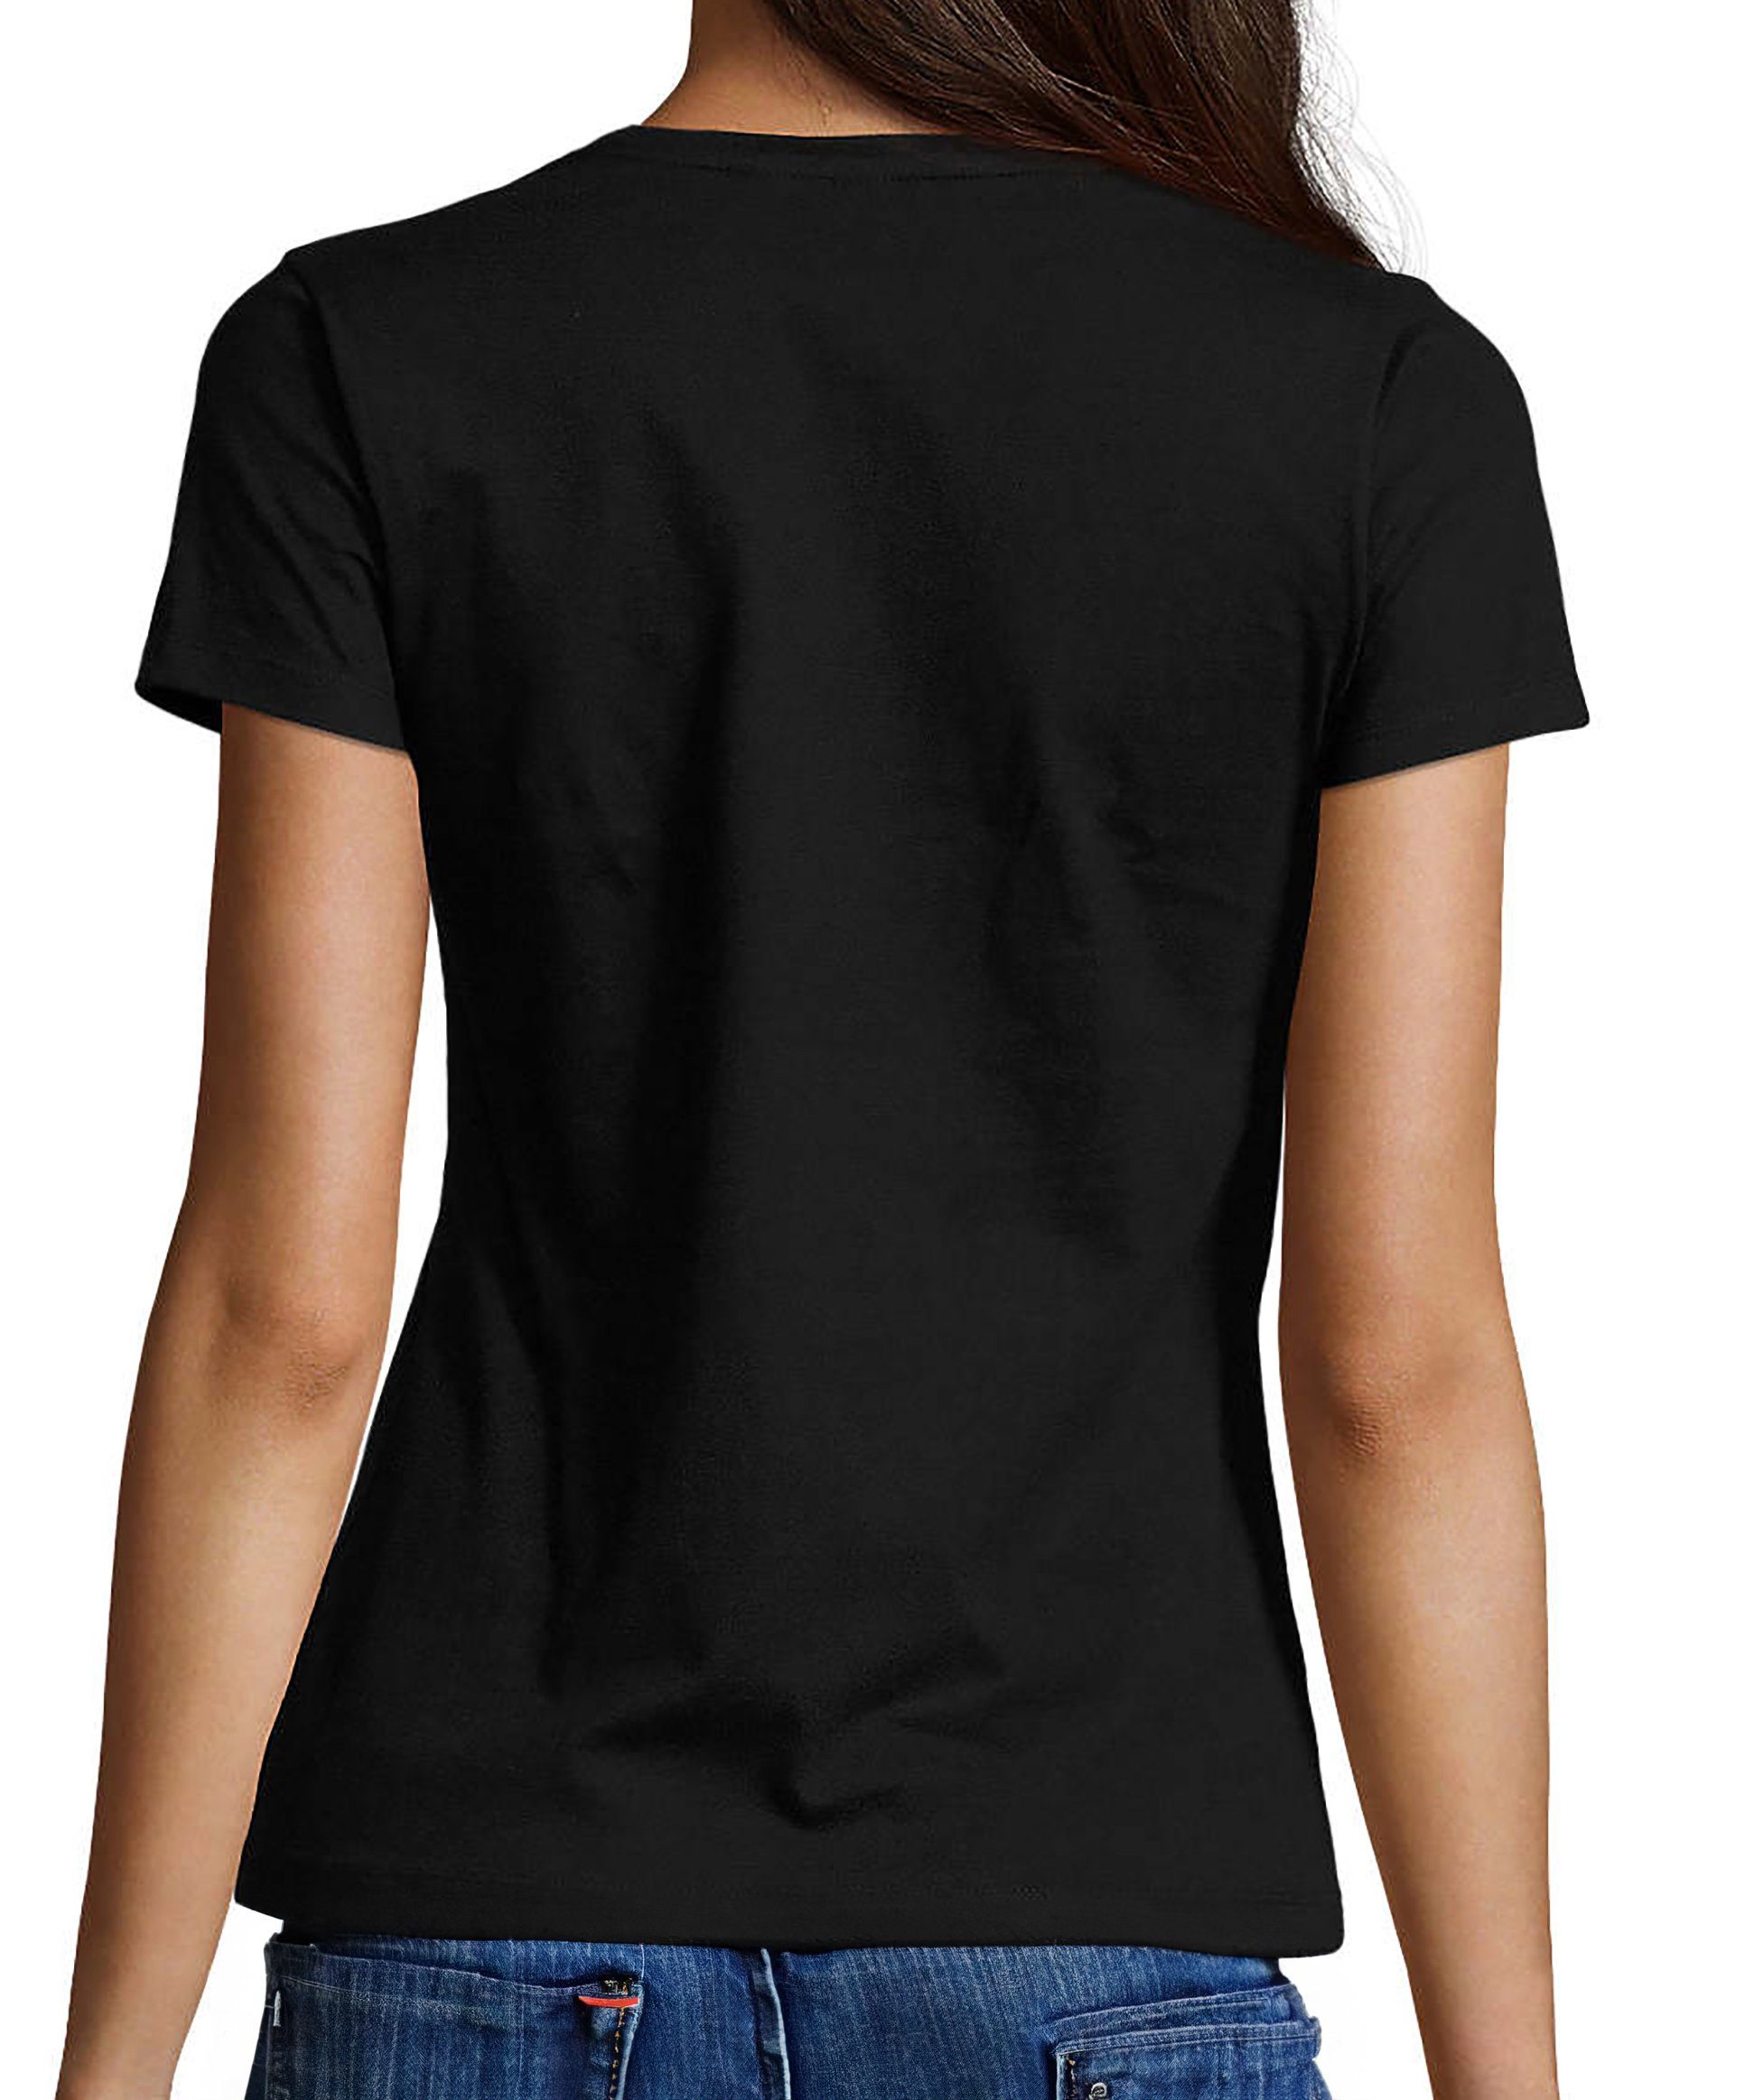 Lächelnder V-Ausschnitt Print - Smiley Smiley schwarz i281 Damen T-Shirt Aufdruck mit Fit, Baumwollshirt Slim MyDesign24 Shirt